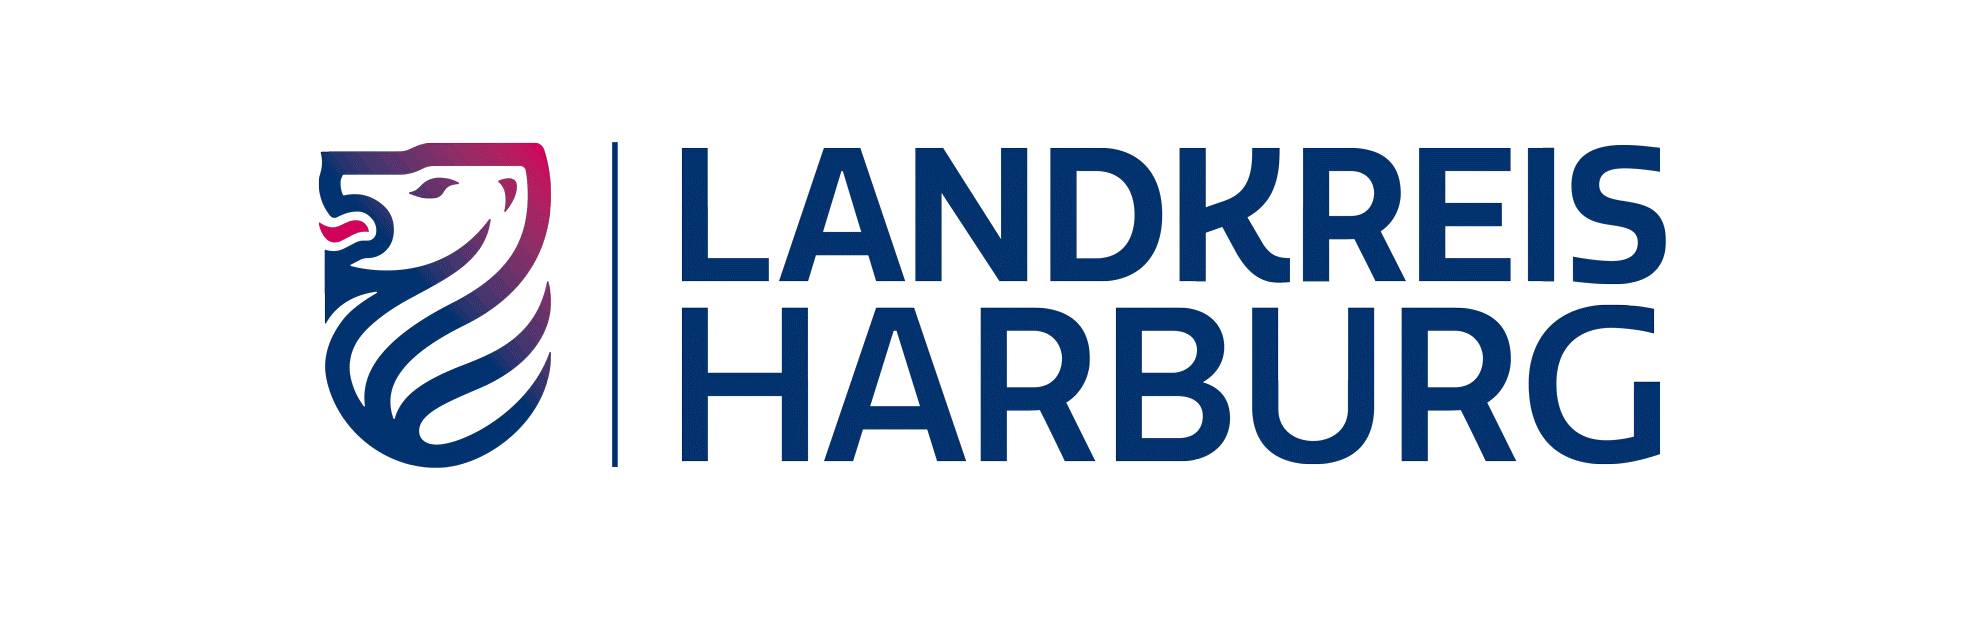 Genehmigung für Ausnahmen von der Straßenverkehrs-Ordnung: Erteilung (Landkreis Harburg)